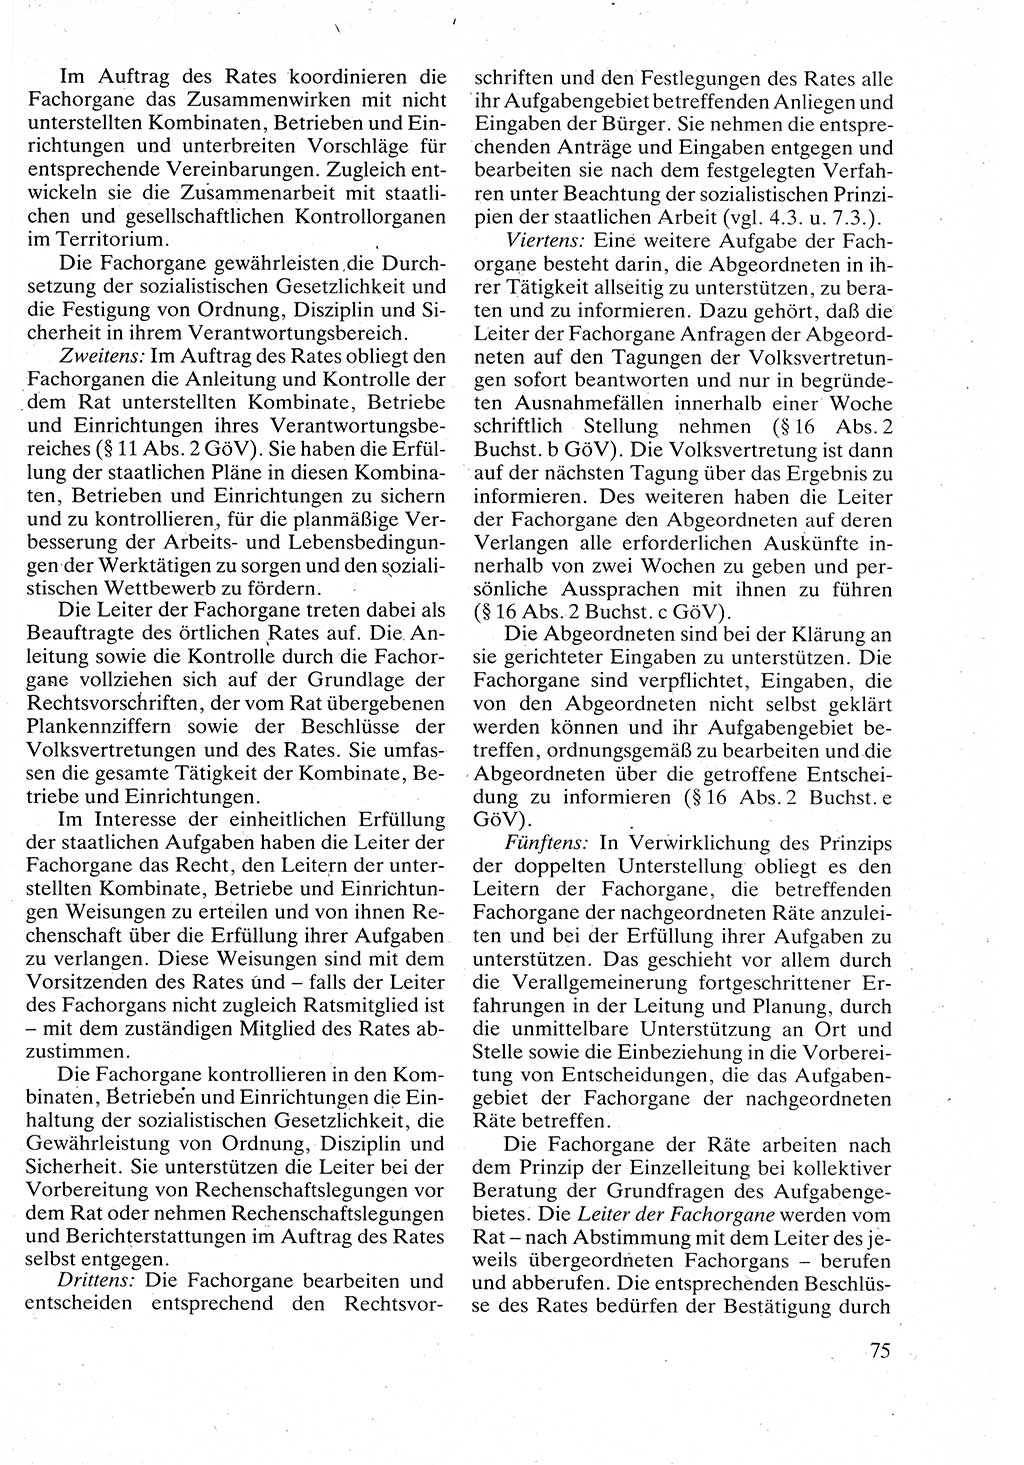 Verwaltungsrecht [Deutsche Demokratische Republik (DDR)], Lehrbuch 1988, Seite 75 (Verw.-R. DDR Lb. 1988, S. 75)